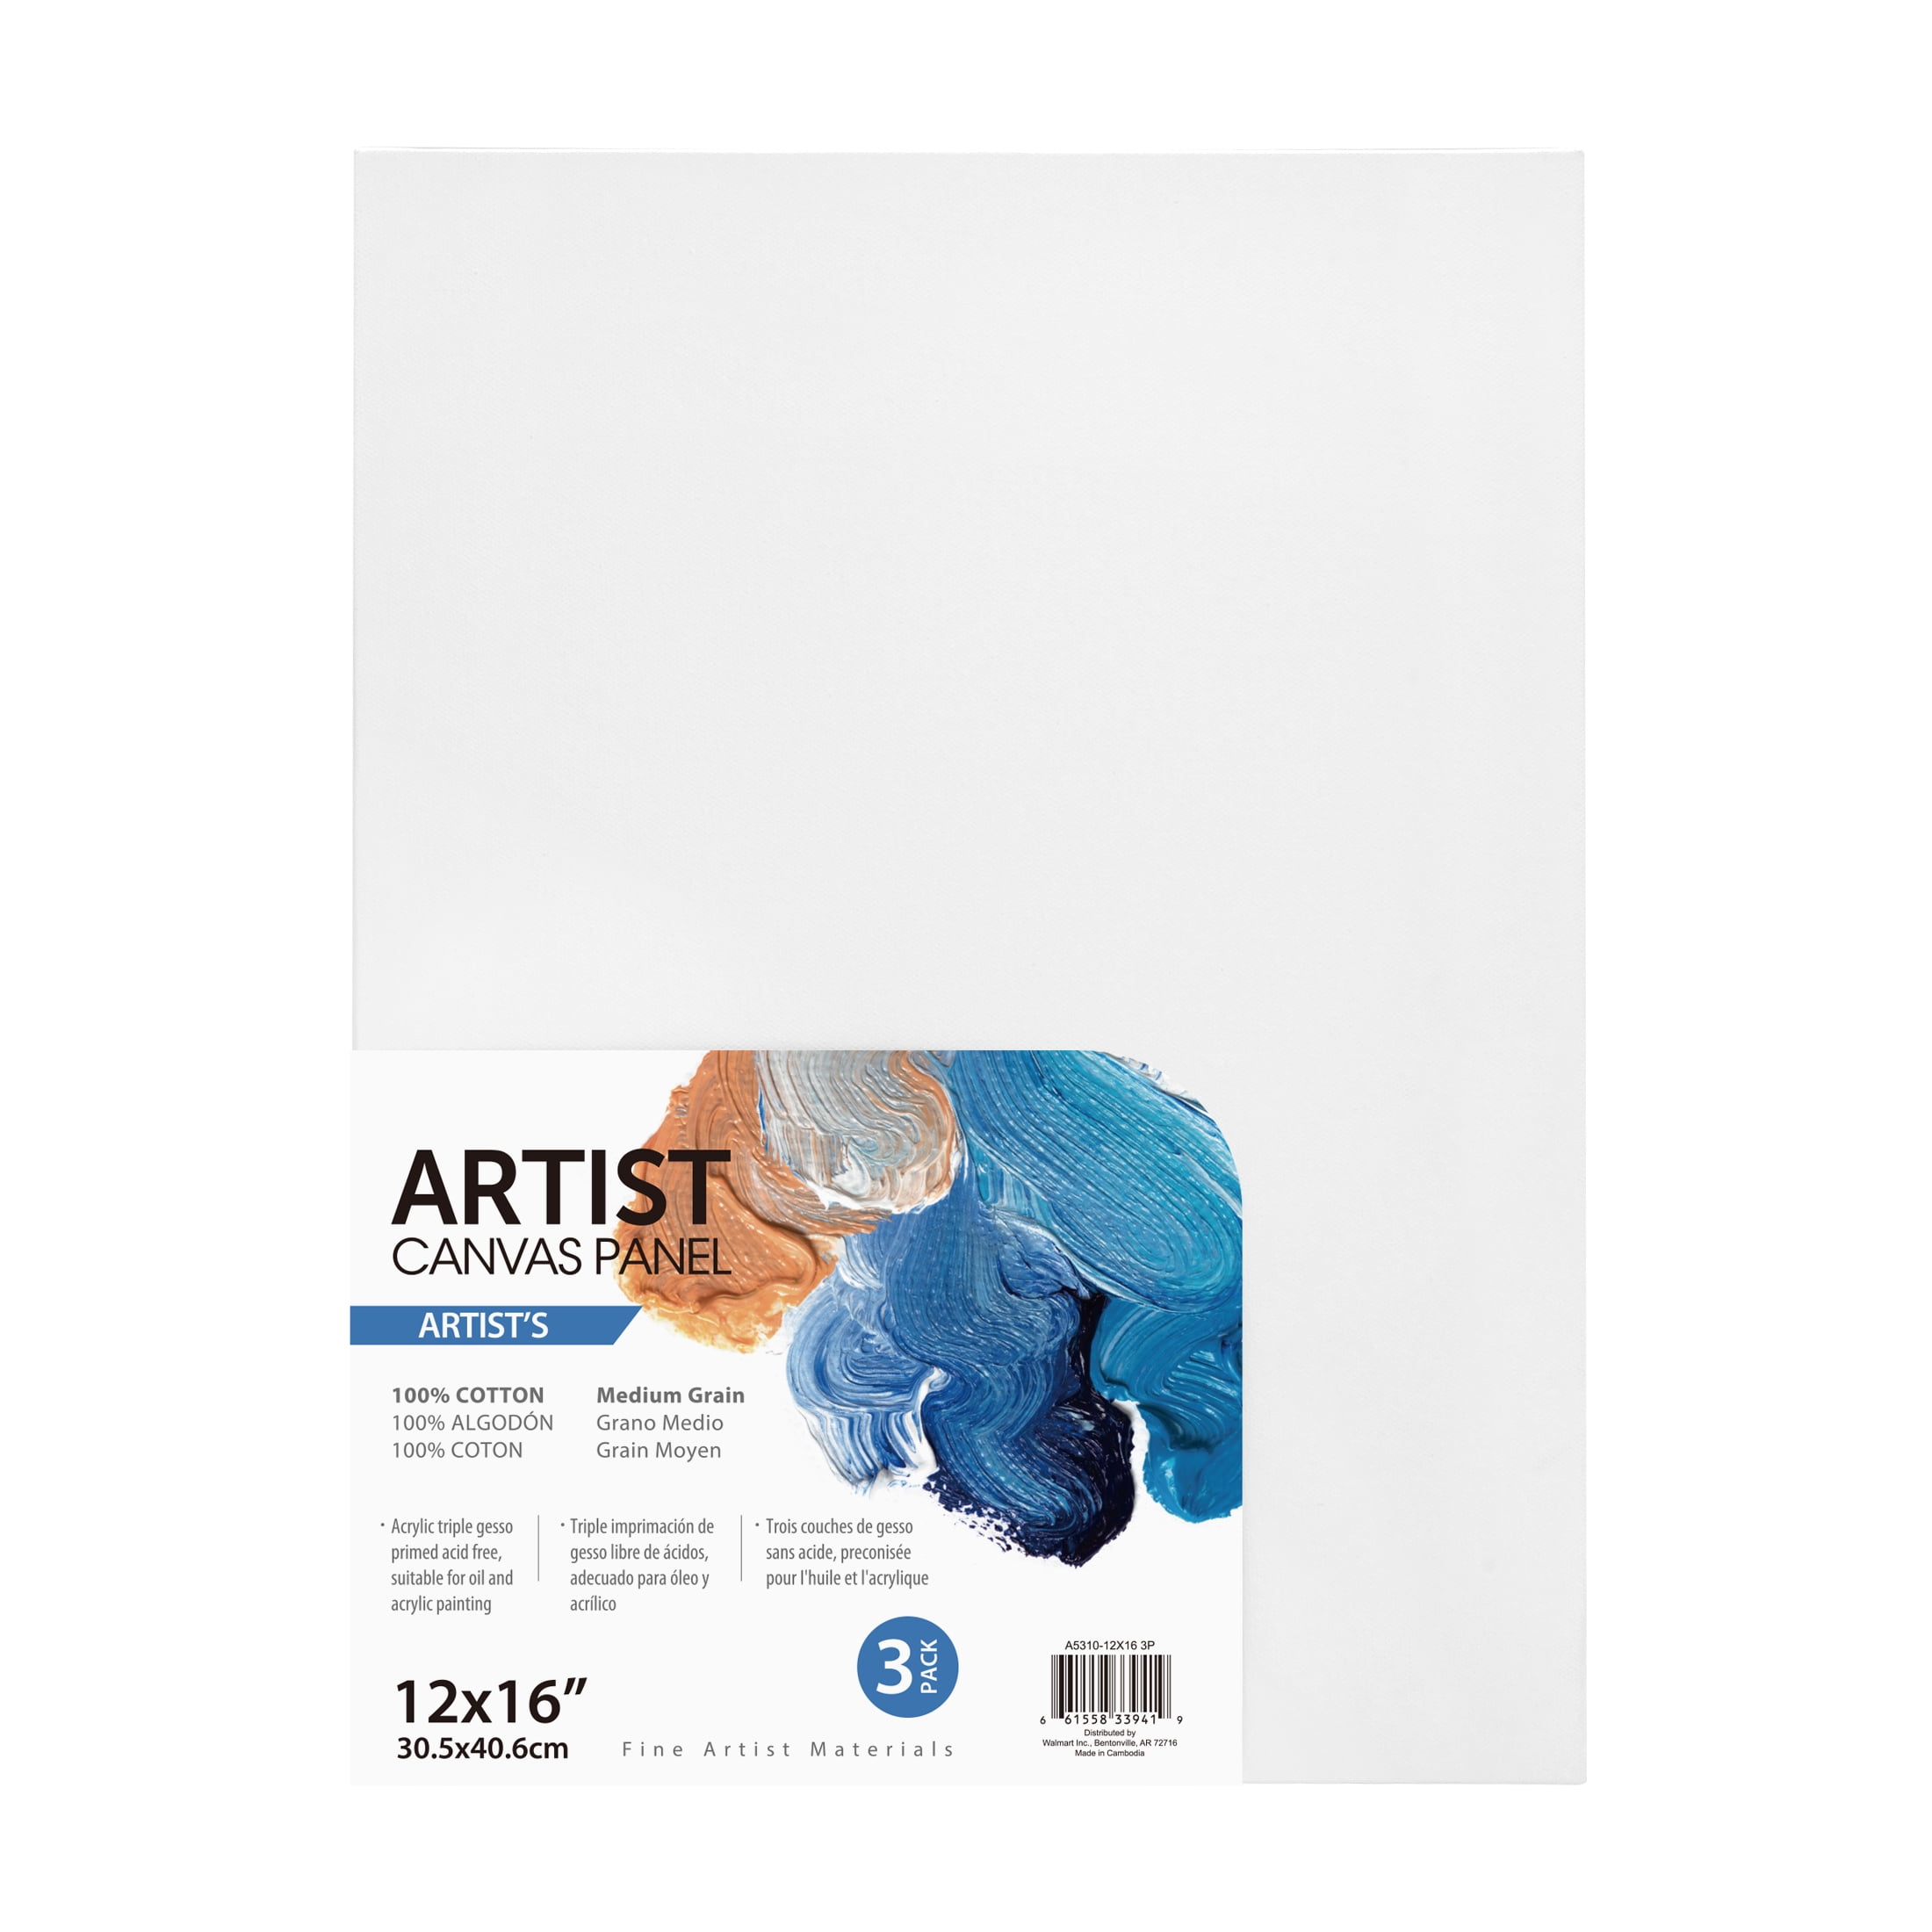 Artist Canvas Panel, 100% Cotton Acid Free White Canvas, 12"X16", 3 Pieces